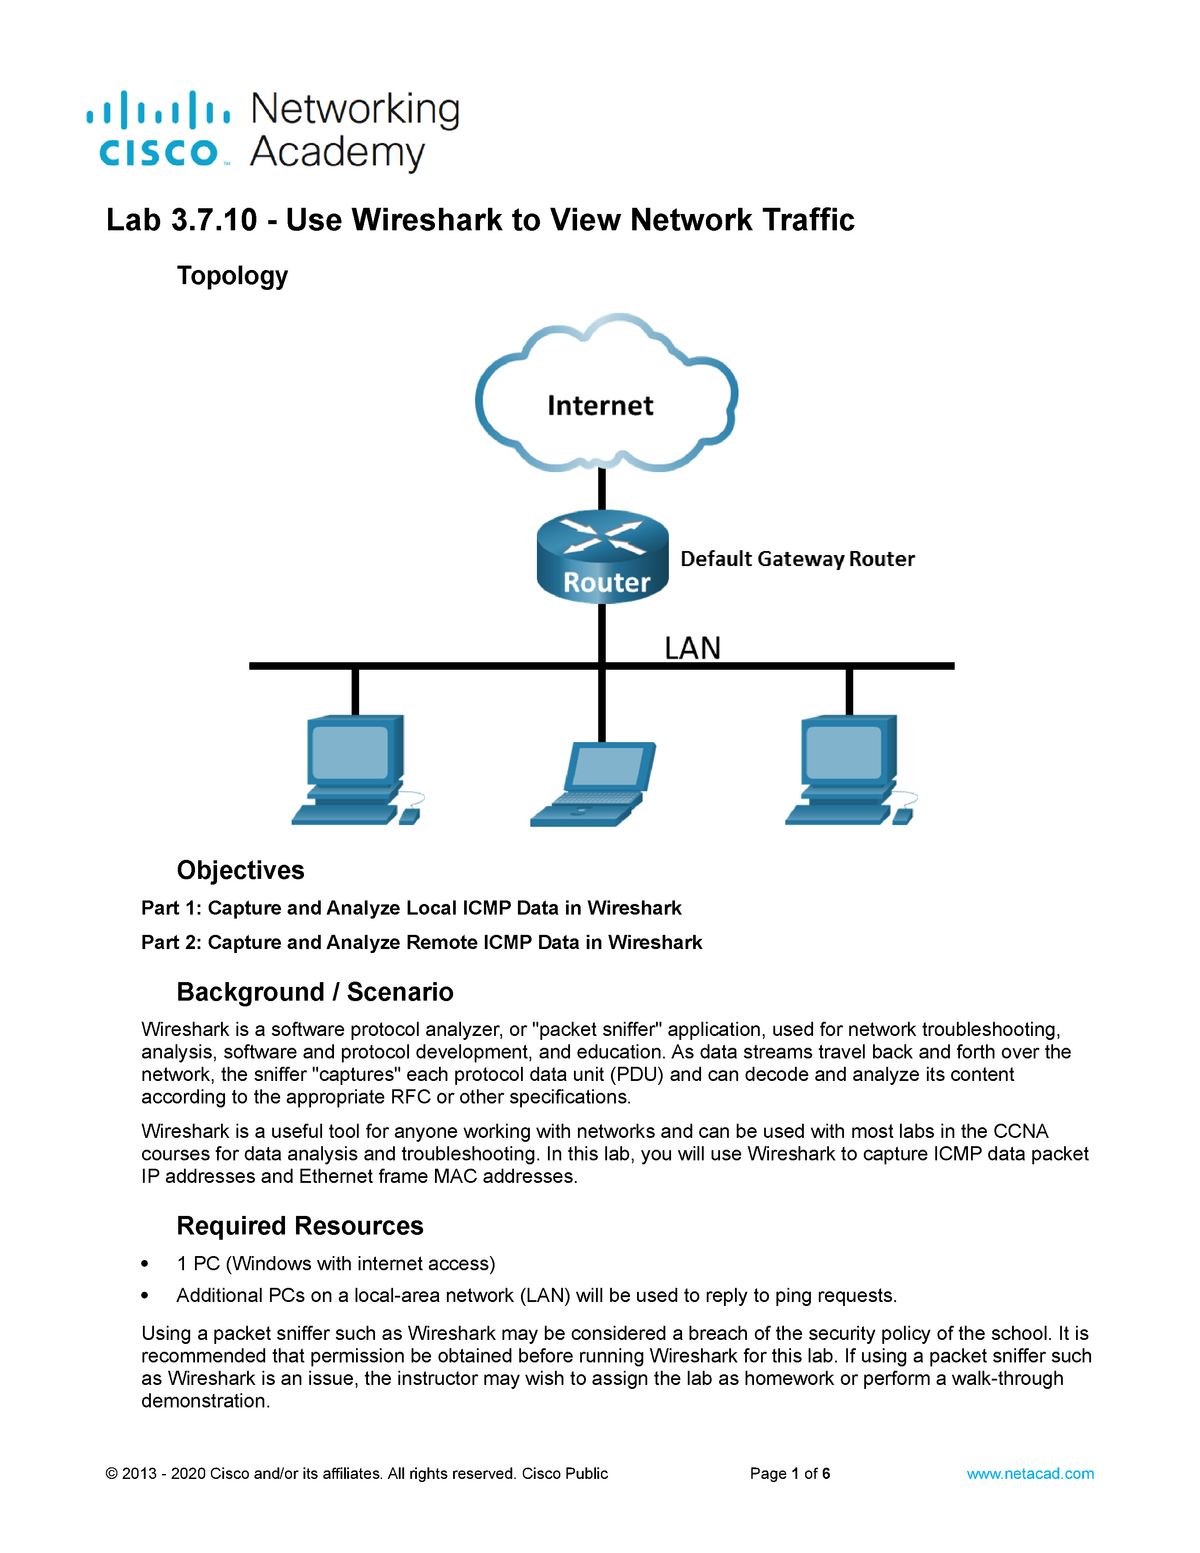 using wireshark to view network traffic